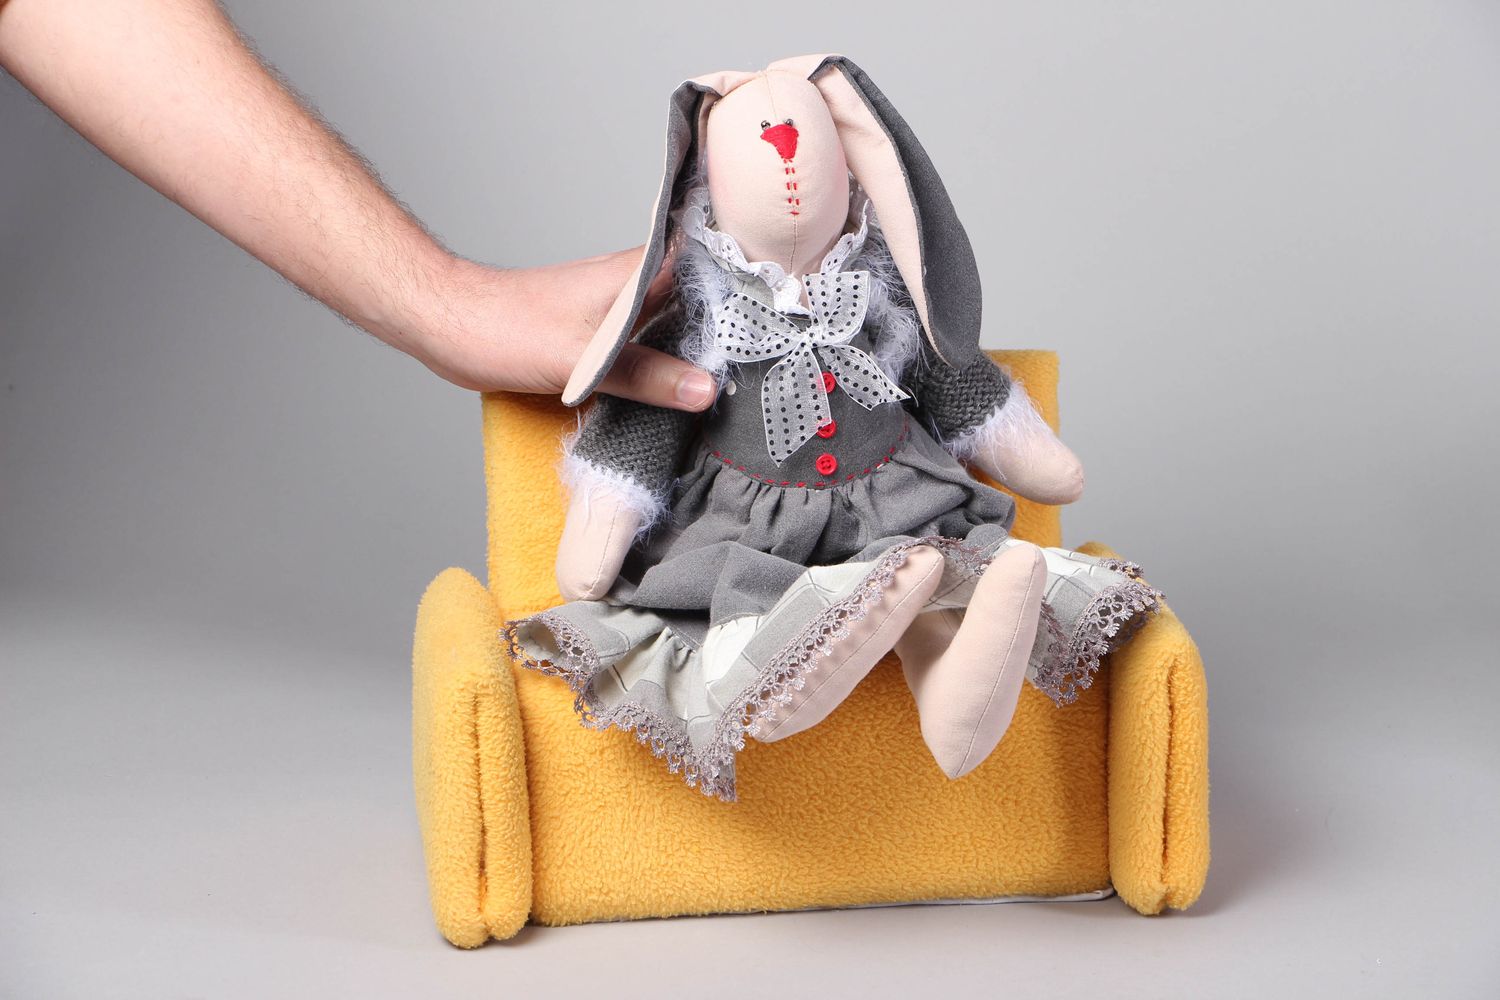 Textil Spielzeug Hase auf Sofa foto 4